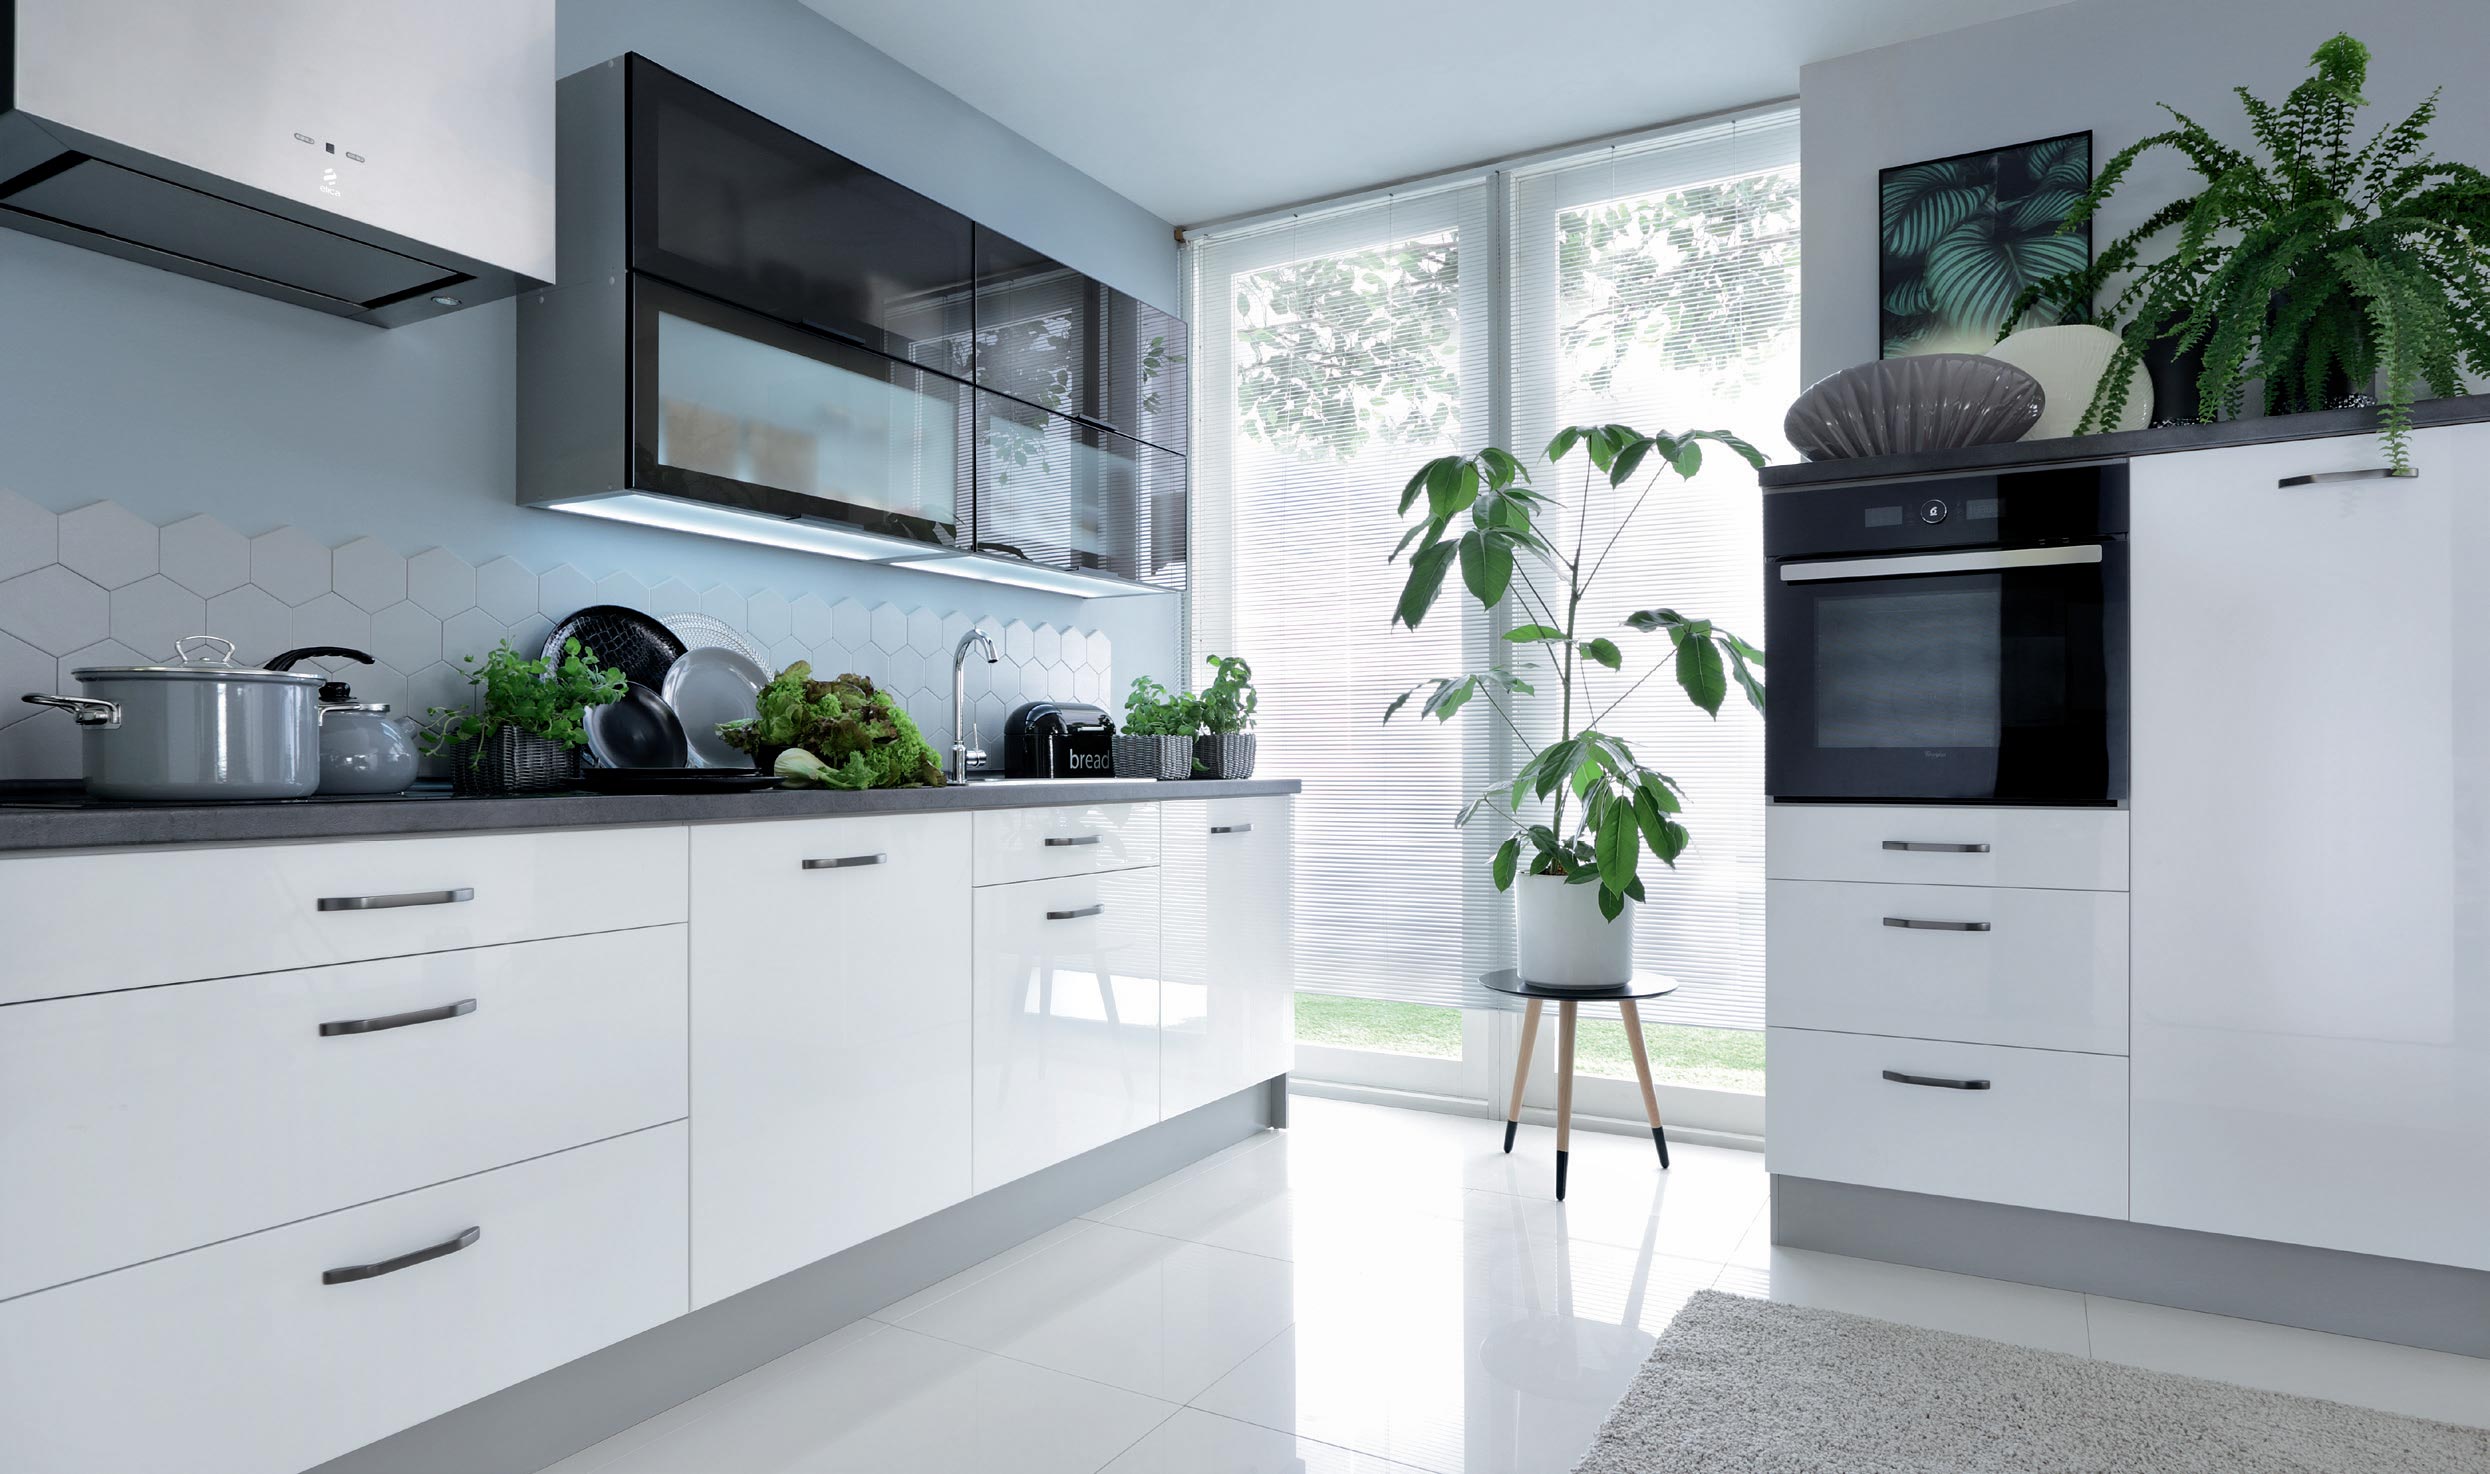 Küchenschrank wählbar weiß fino weiß Unterschrank Hochschrank Modern 68135158 